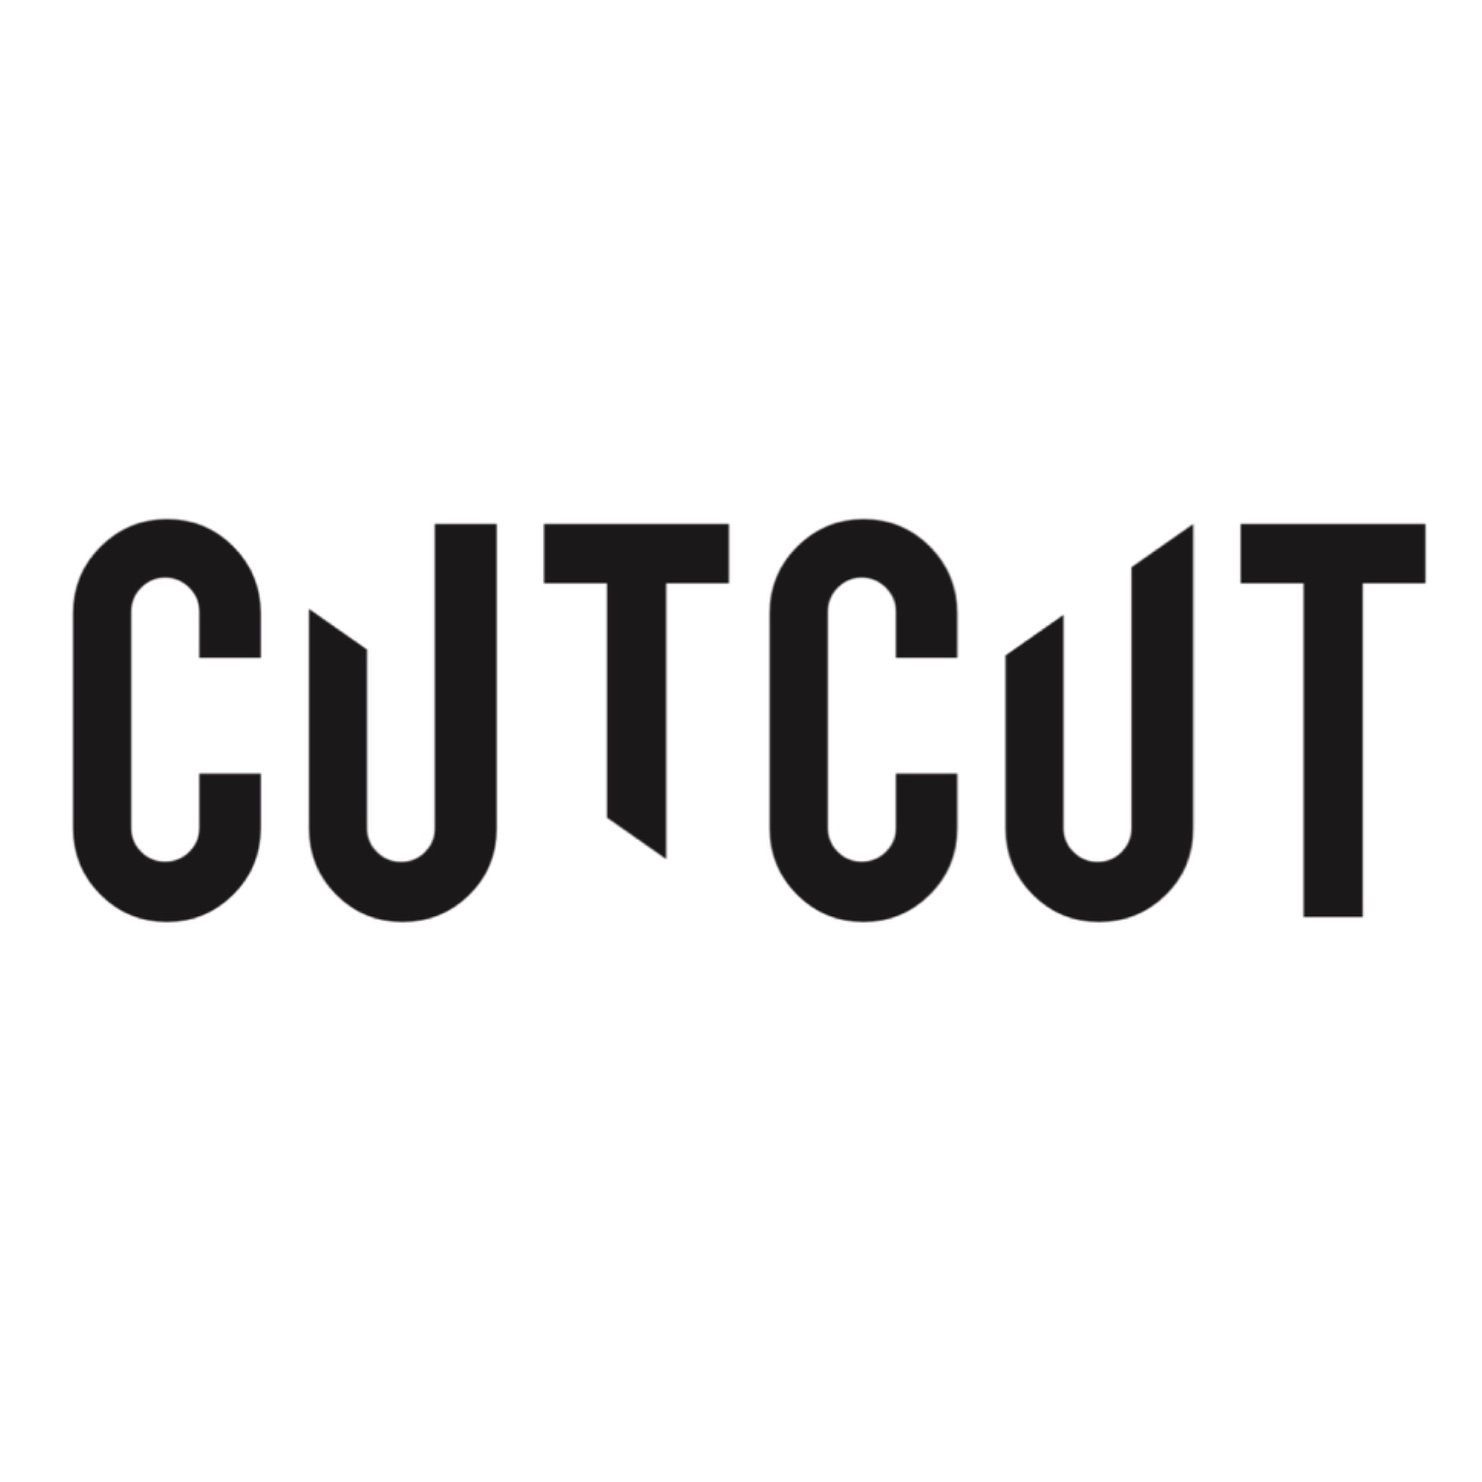 CUTCUT, Bażantów 22, 40-668, Katowice